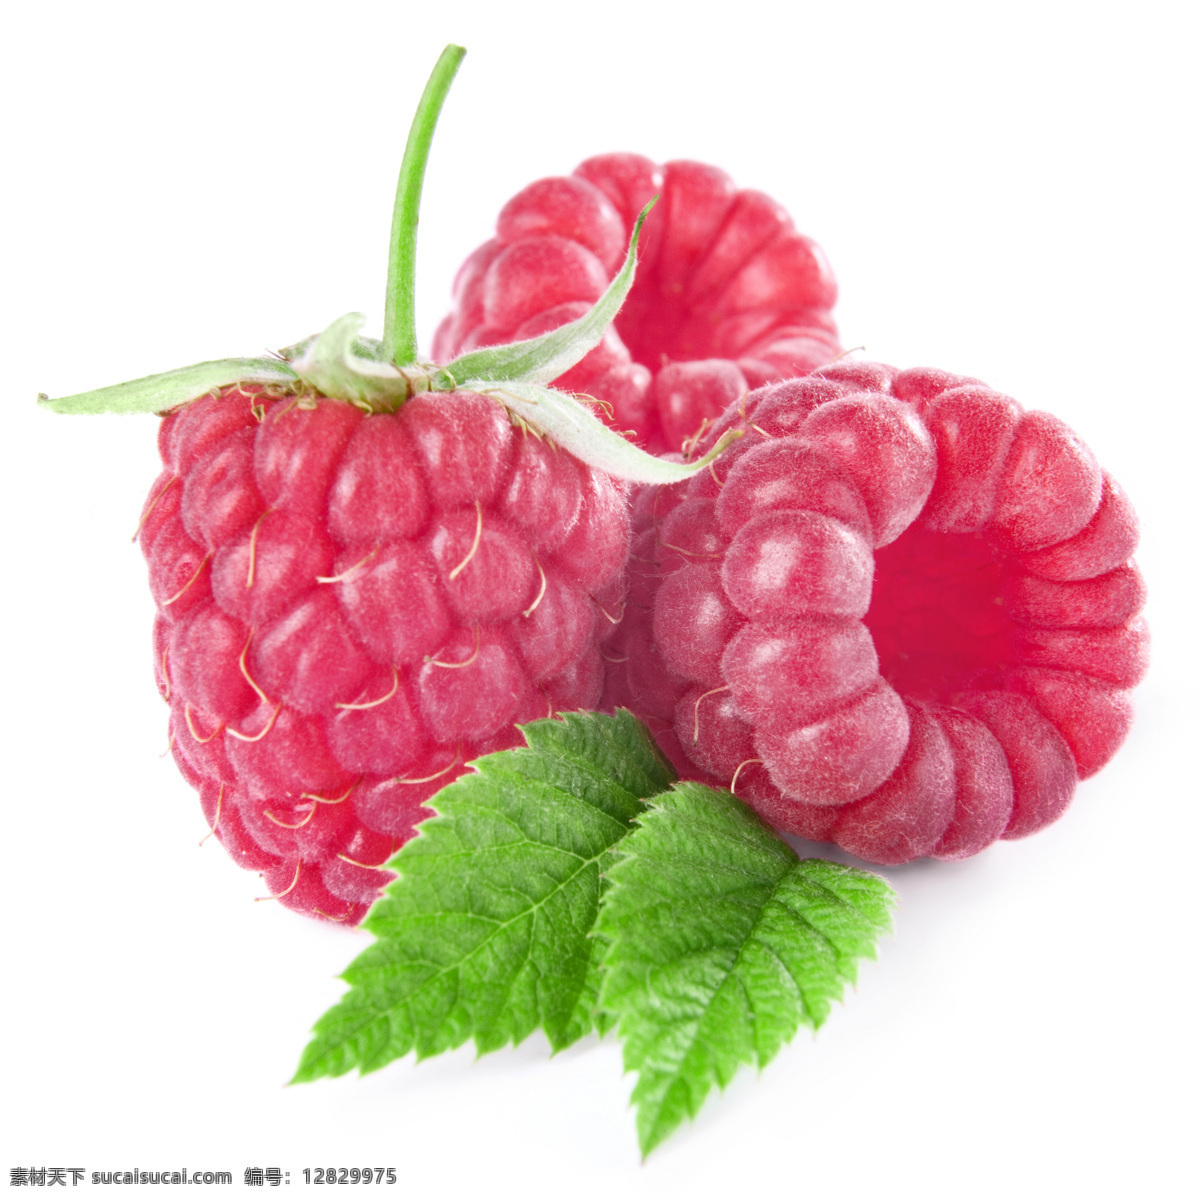 新鲜水果 野果 覆盆子 草莓 水果蔬菜 餐饮美食 白色